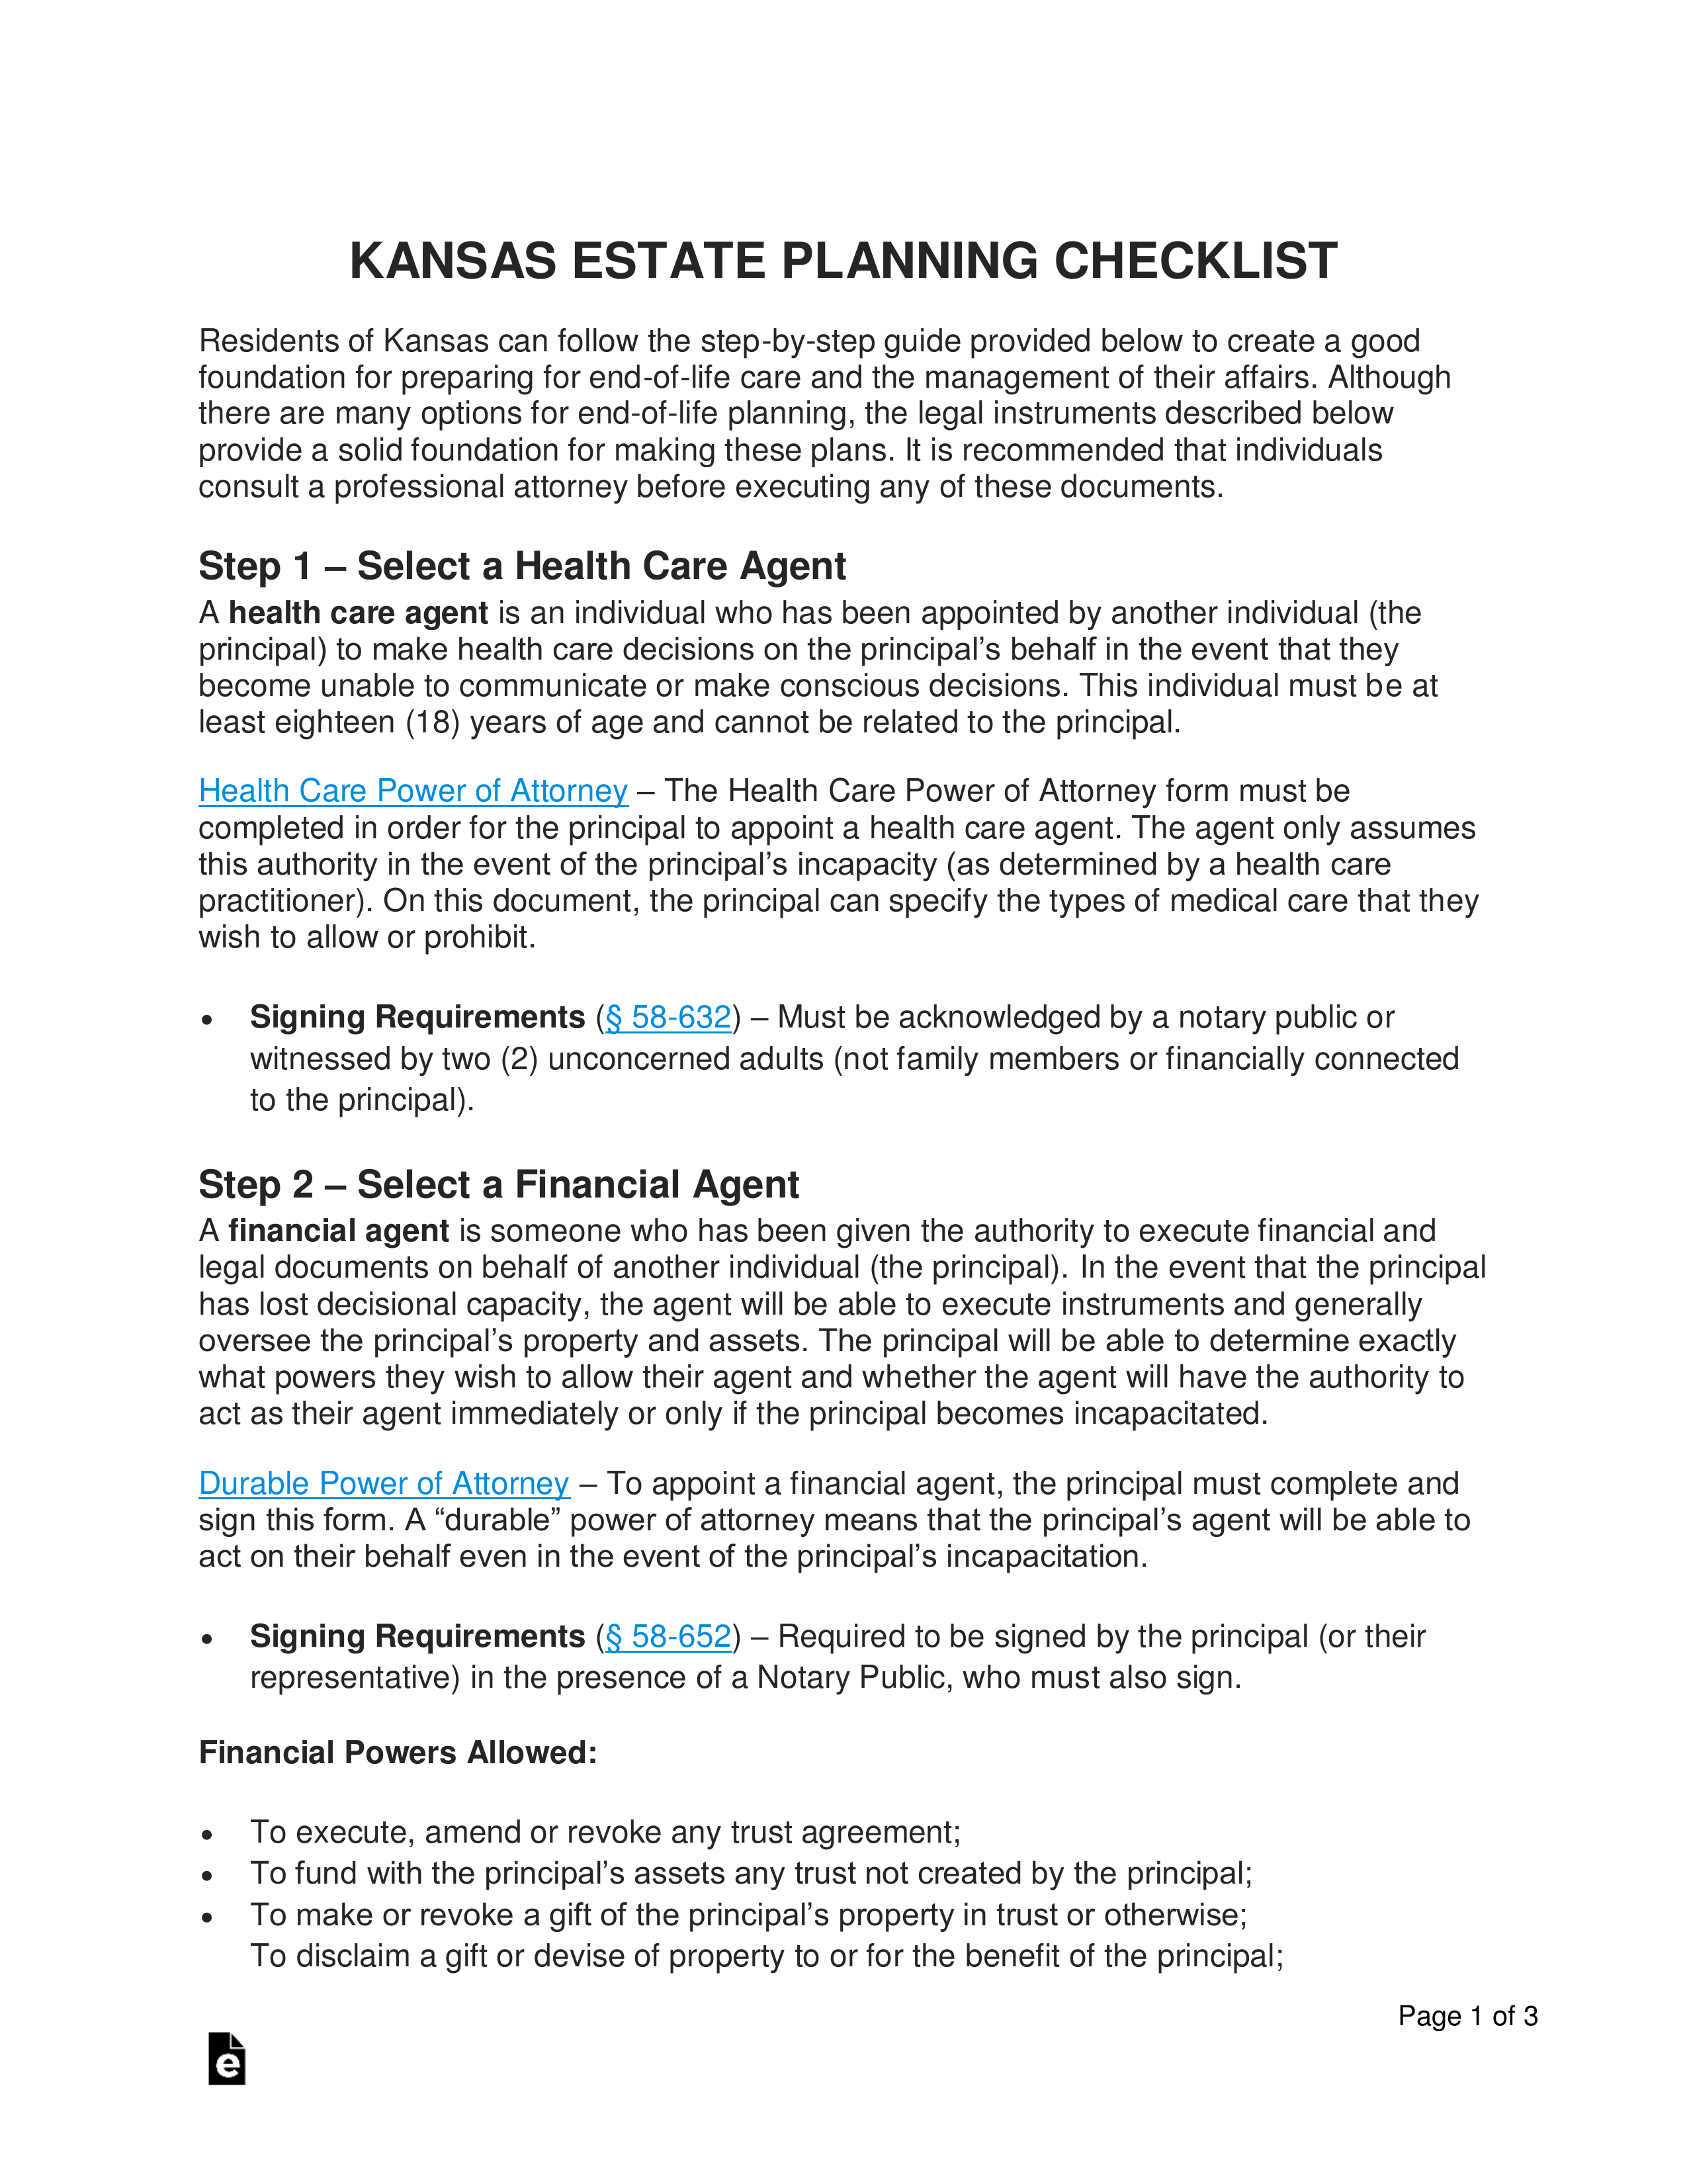 Kansas Estate Planning Checklist